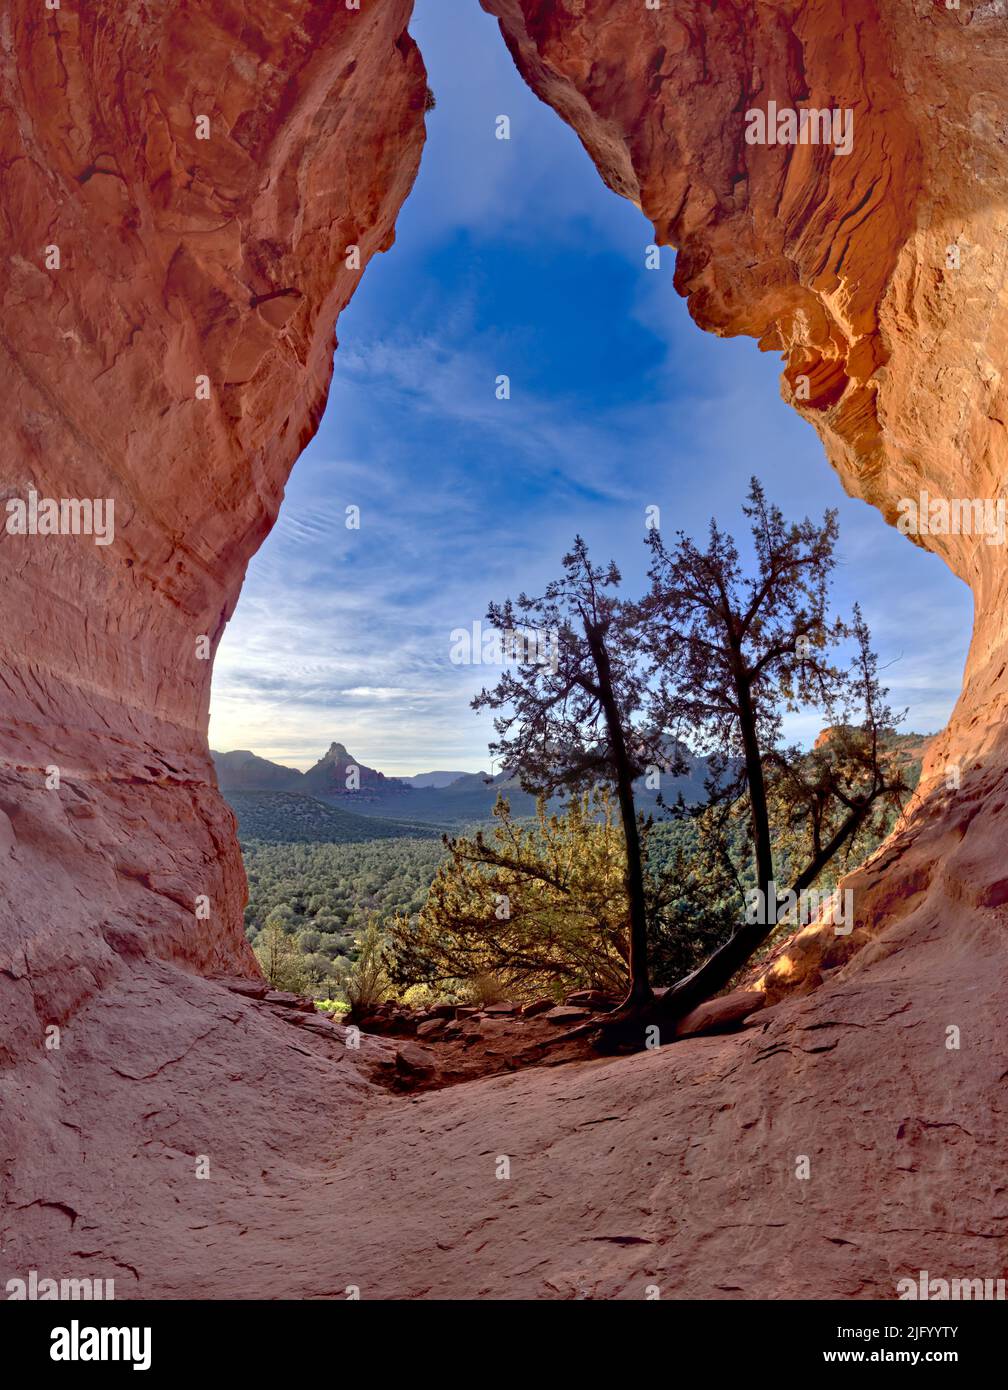 Die Birthing Cave auf der Seite des Mescal Mountain, wo indische Frauen in alten Zeiten zur Geburt kamen, Sedona, Arizona, USA Stockfoto